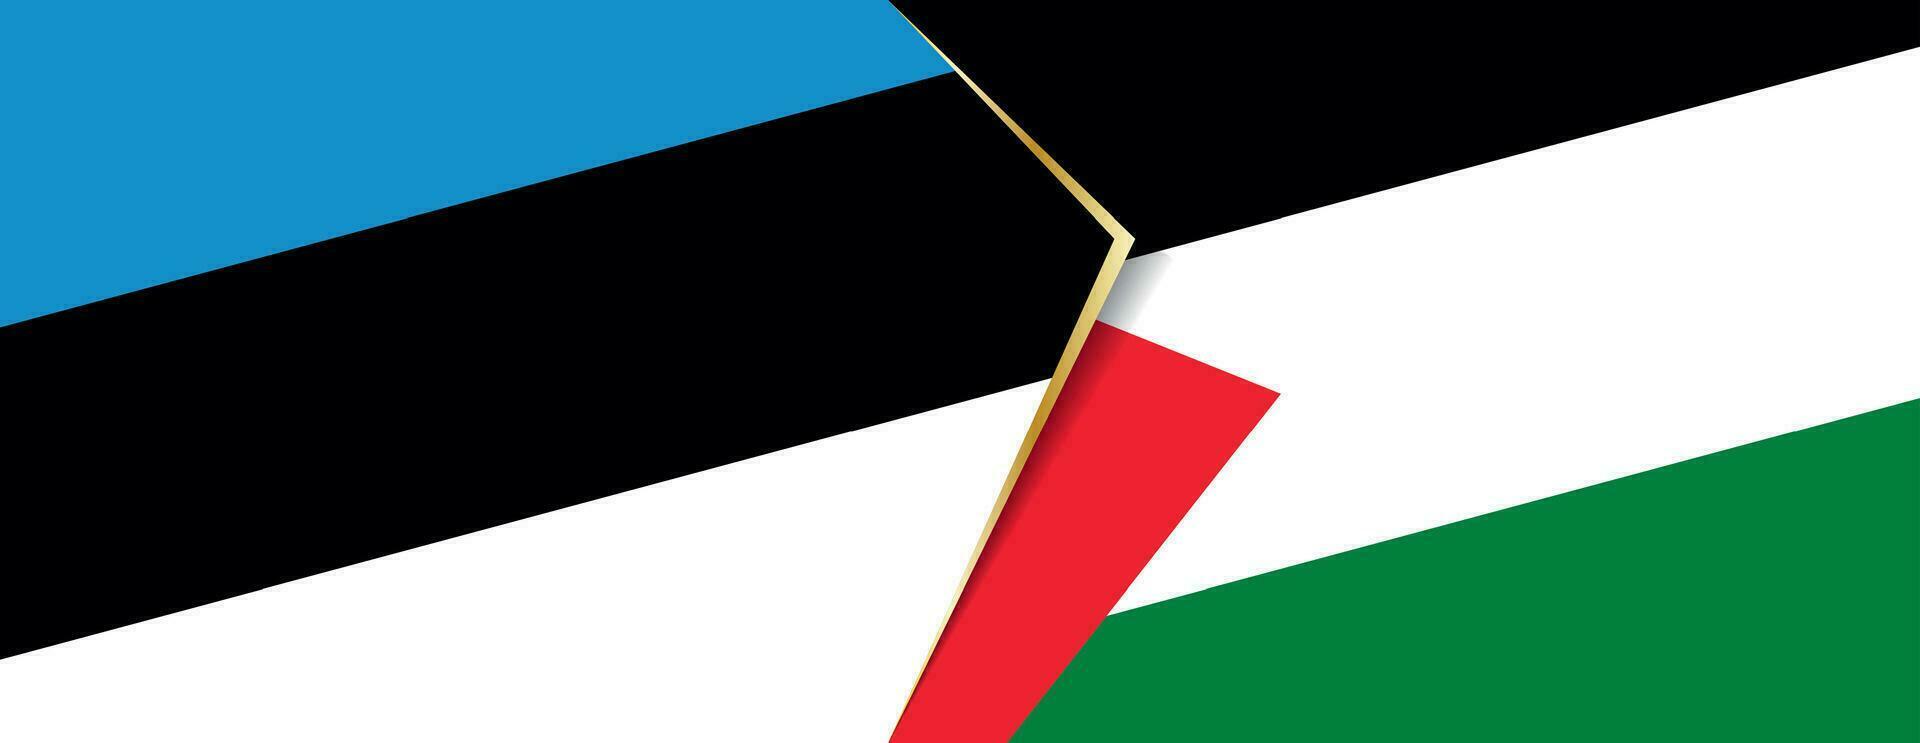 Estland und Palästina Flaggen, zwei Vektor Flaggen.